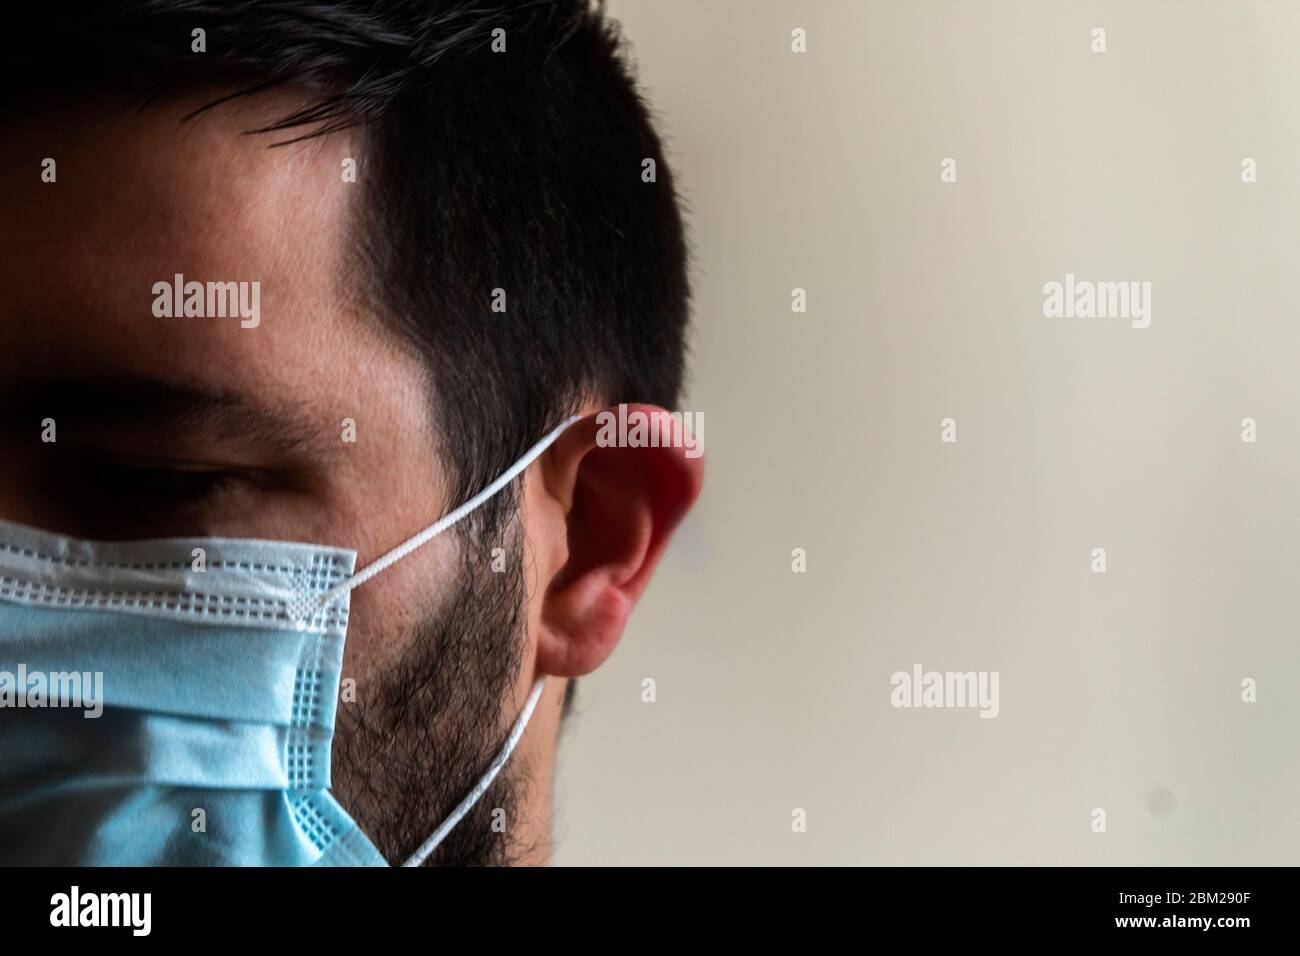 Ritratto di un maschio con maschera blu in uno spazio interno. Ritratto psicologico degli effetti della quarantena per la crisi di Coronavirus Foto Stock